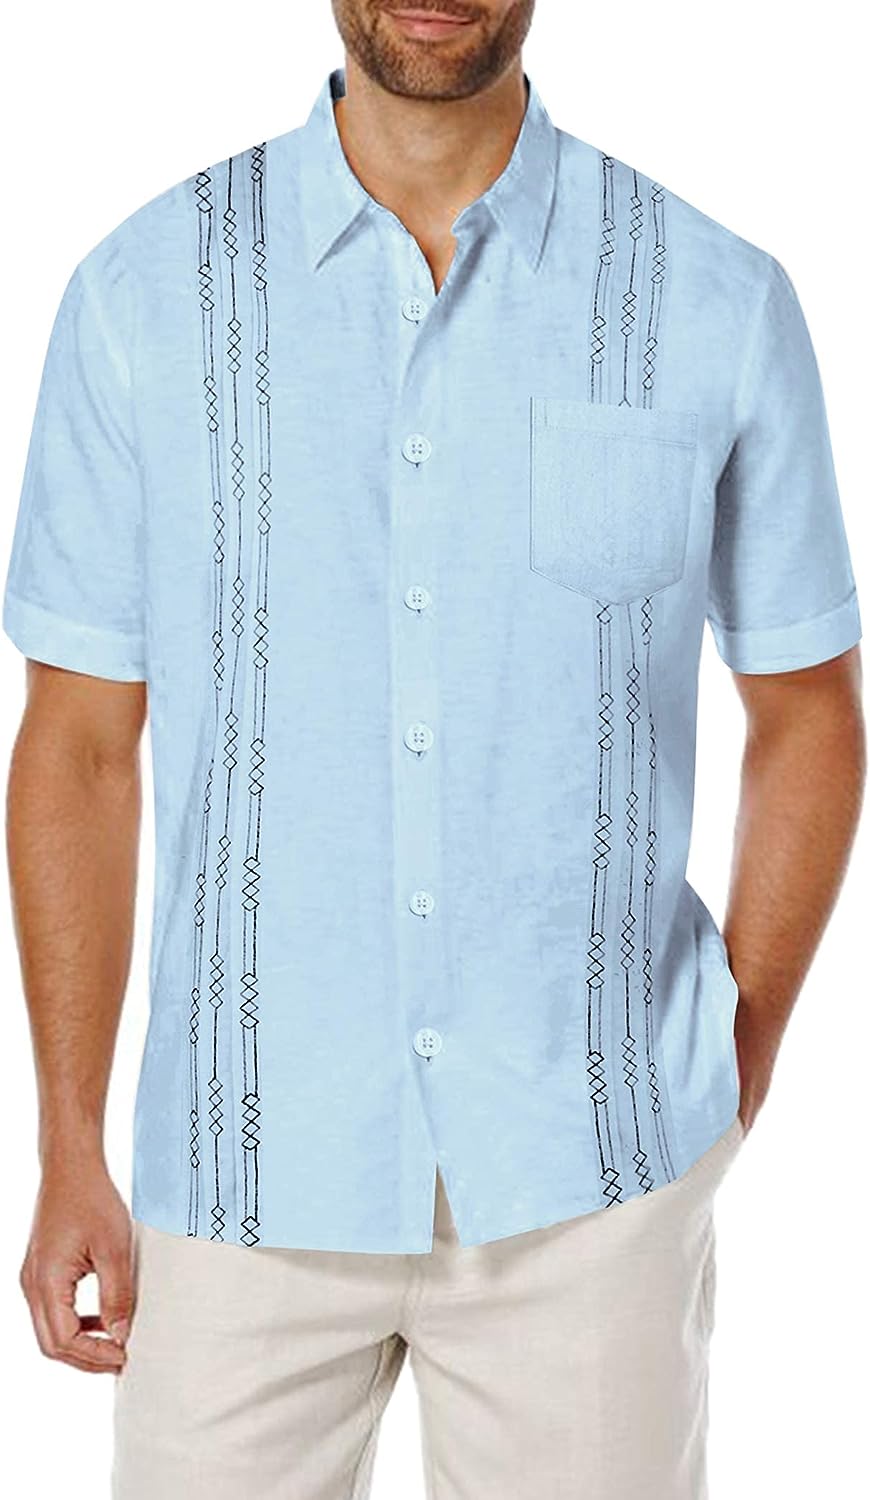 COOFANDY Men's Short Sleeve Linen Shirt Cuban Beach Tops Pocket